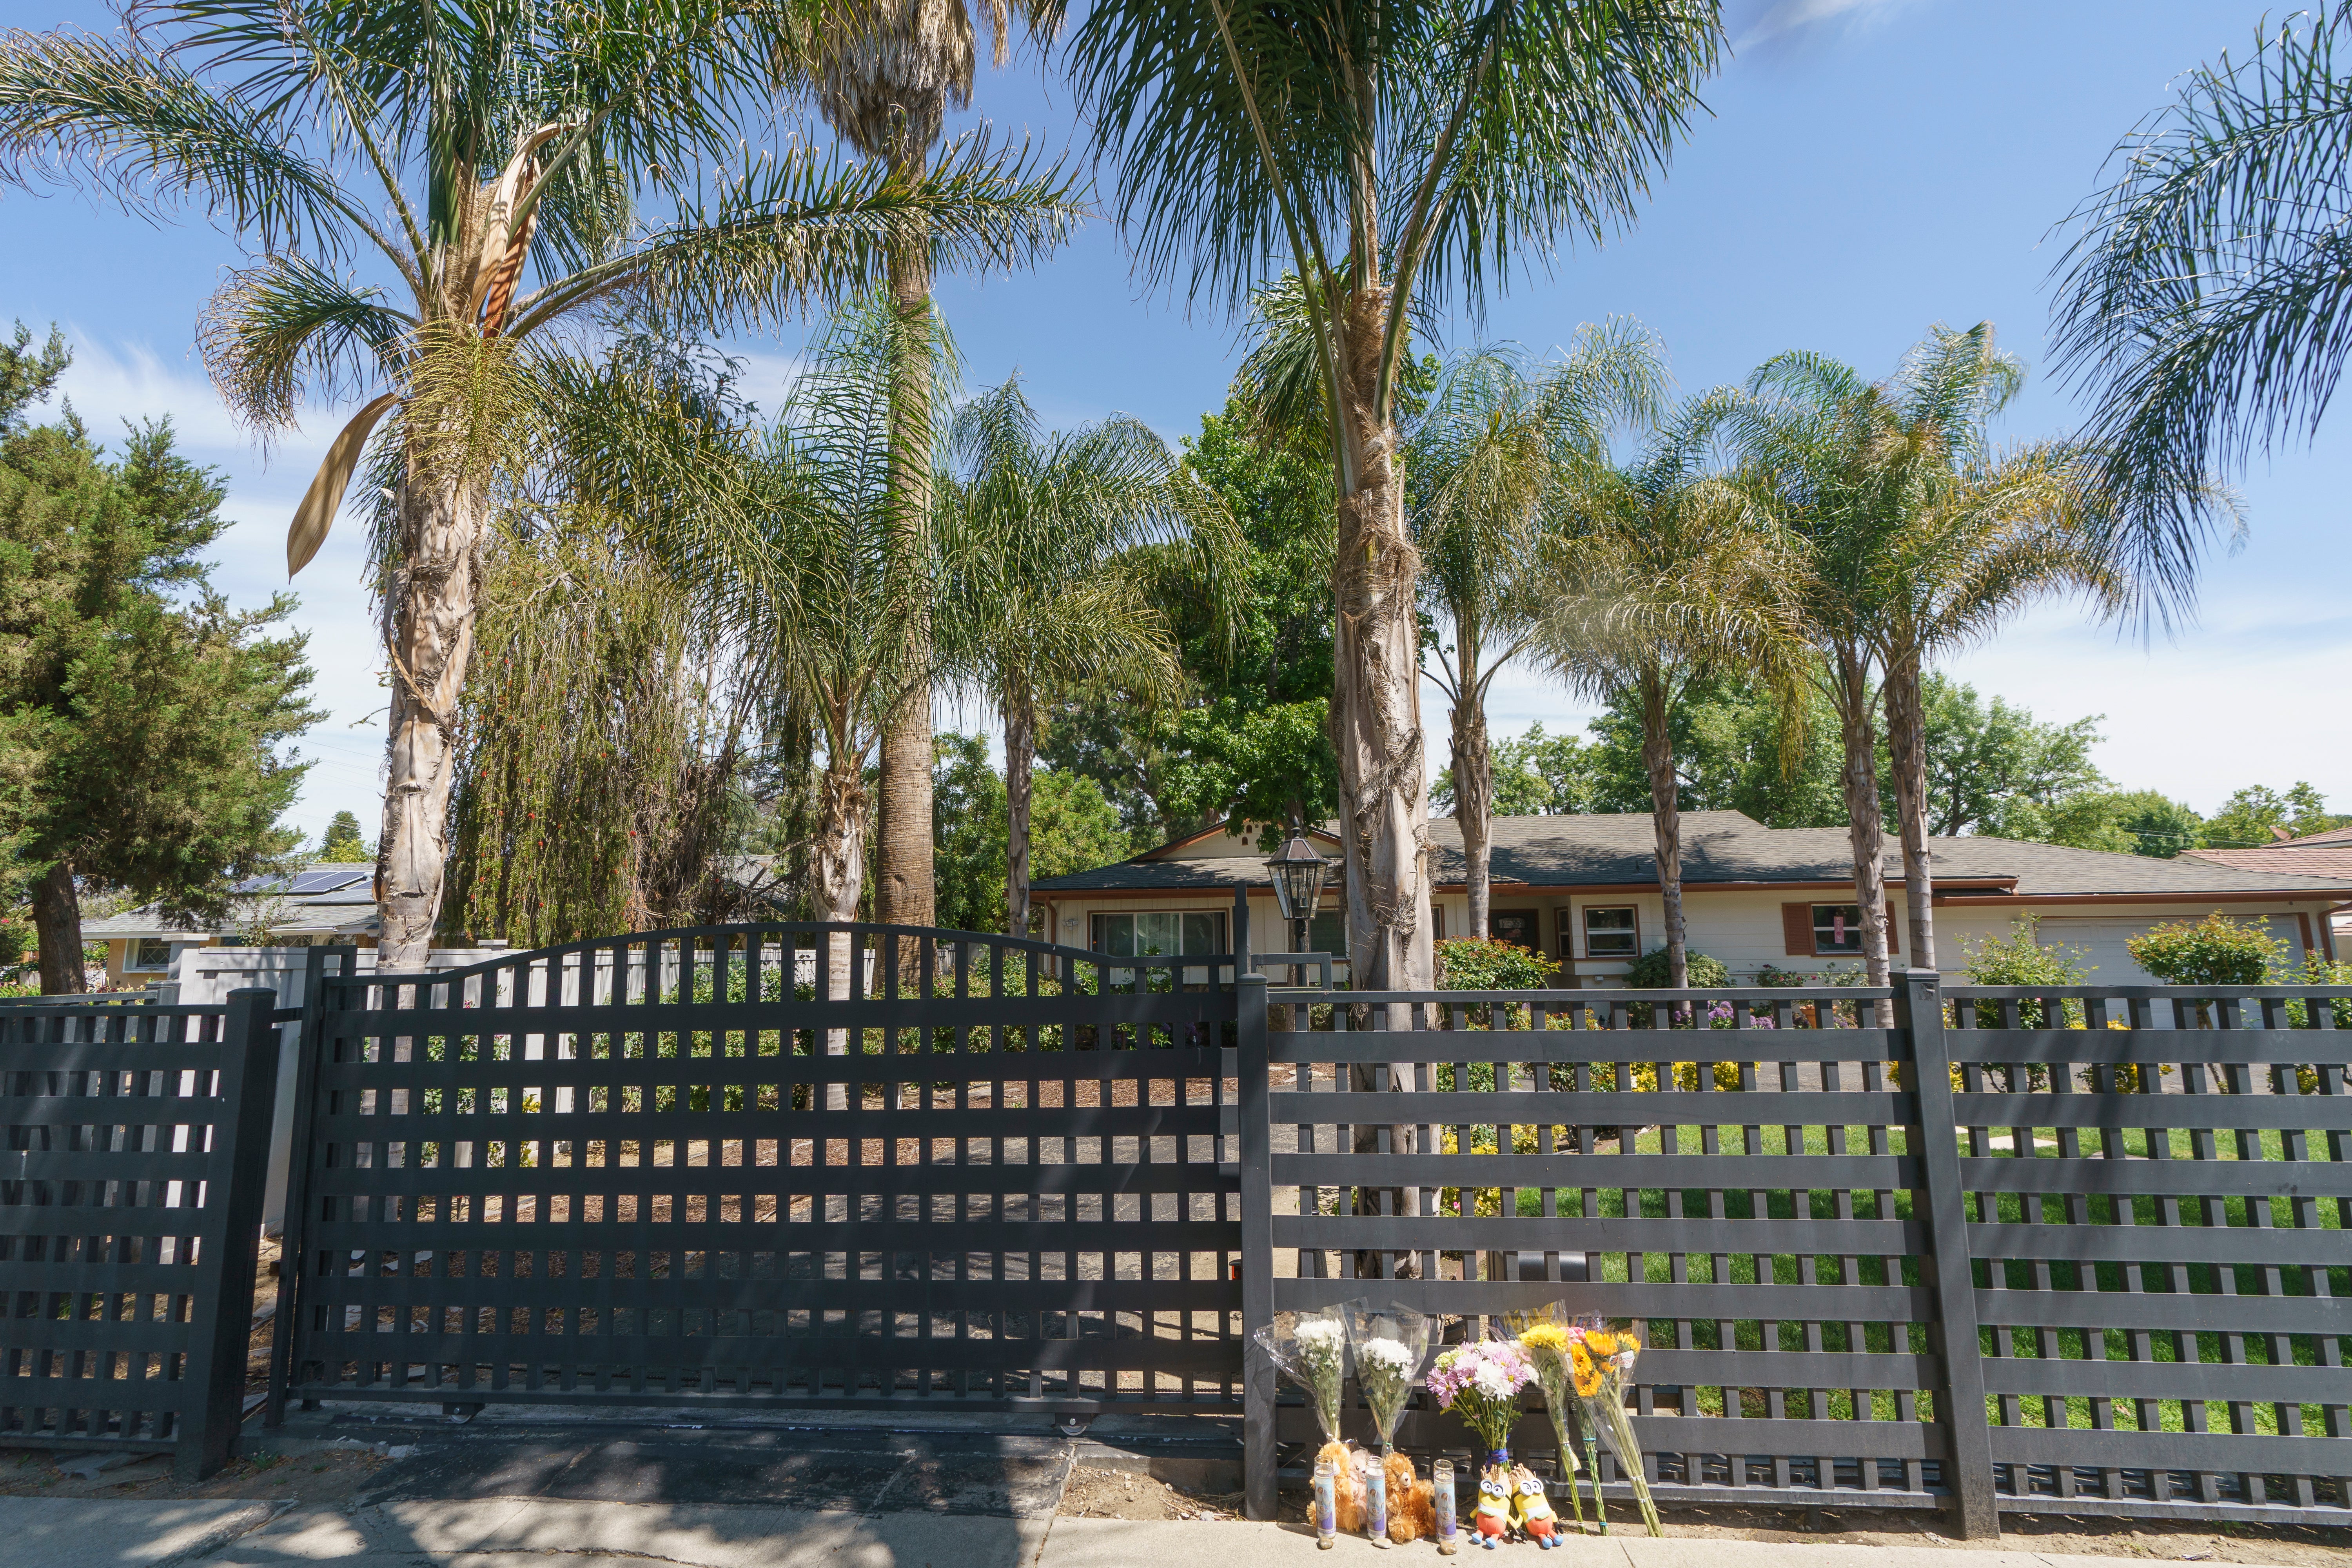 Flores y osos de peluche fueron colocados afuera de una casa estilo rancho en el barrio de West Hills del Valle de San Fernando en Los Ángeles, el lunes 9 de mayo de 2022